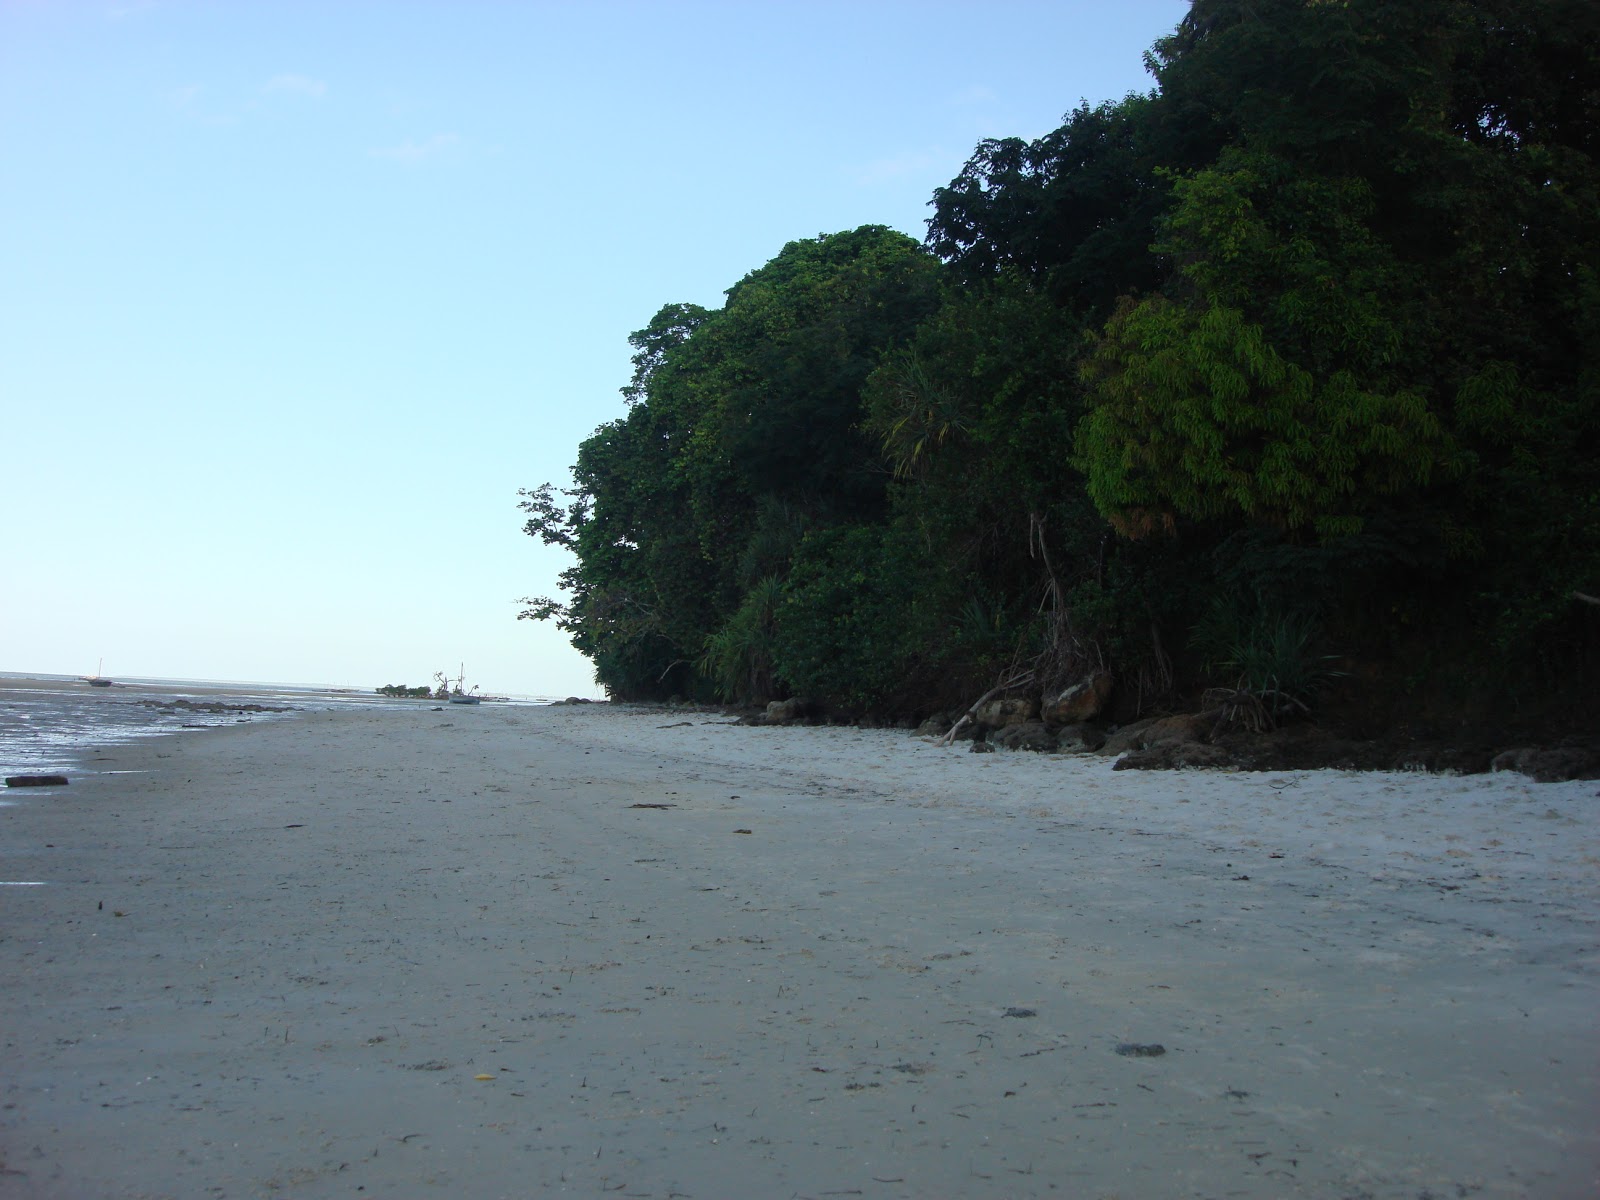 Fotografie cu Msuka Beach cu o suprafață de nisip strălucitor